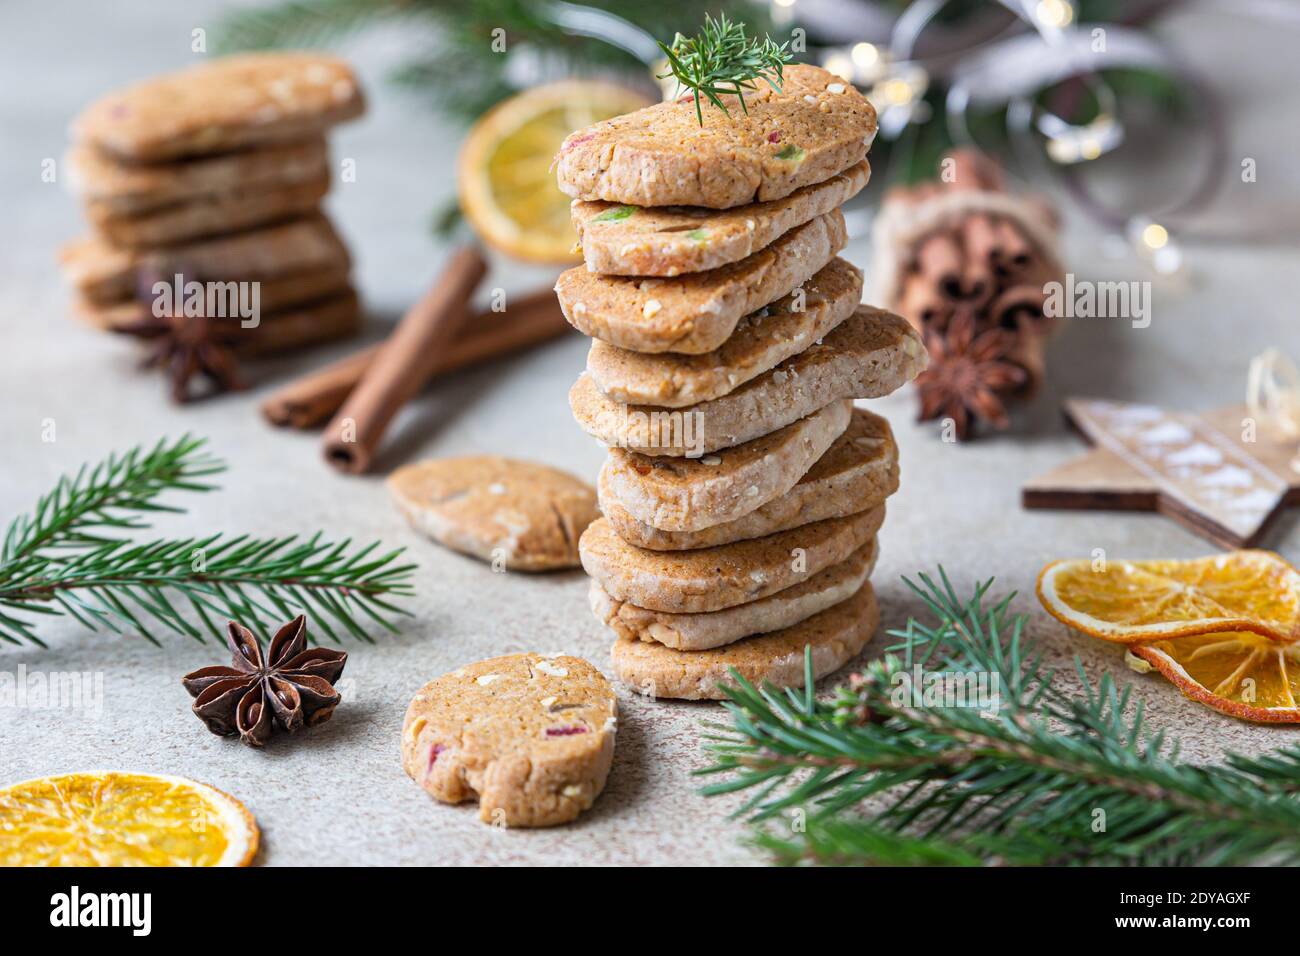 Biscuits au beurre épicés empilés avec fruits confits, bâtonnets de cannelle et anis. Fond de Noël ou de nouvel an avec branches de sapin et oran séché Banque D'Images